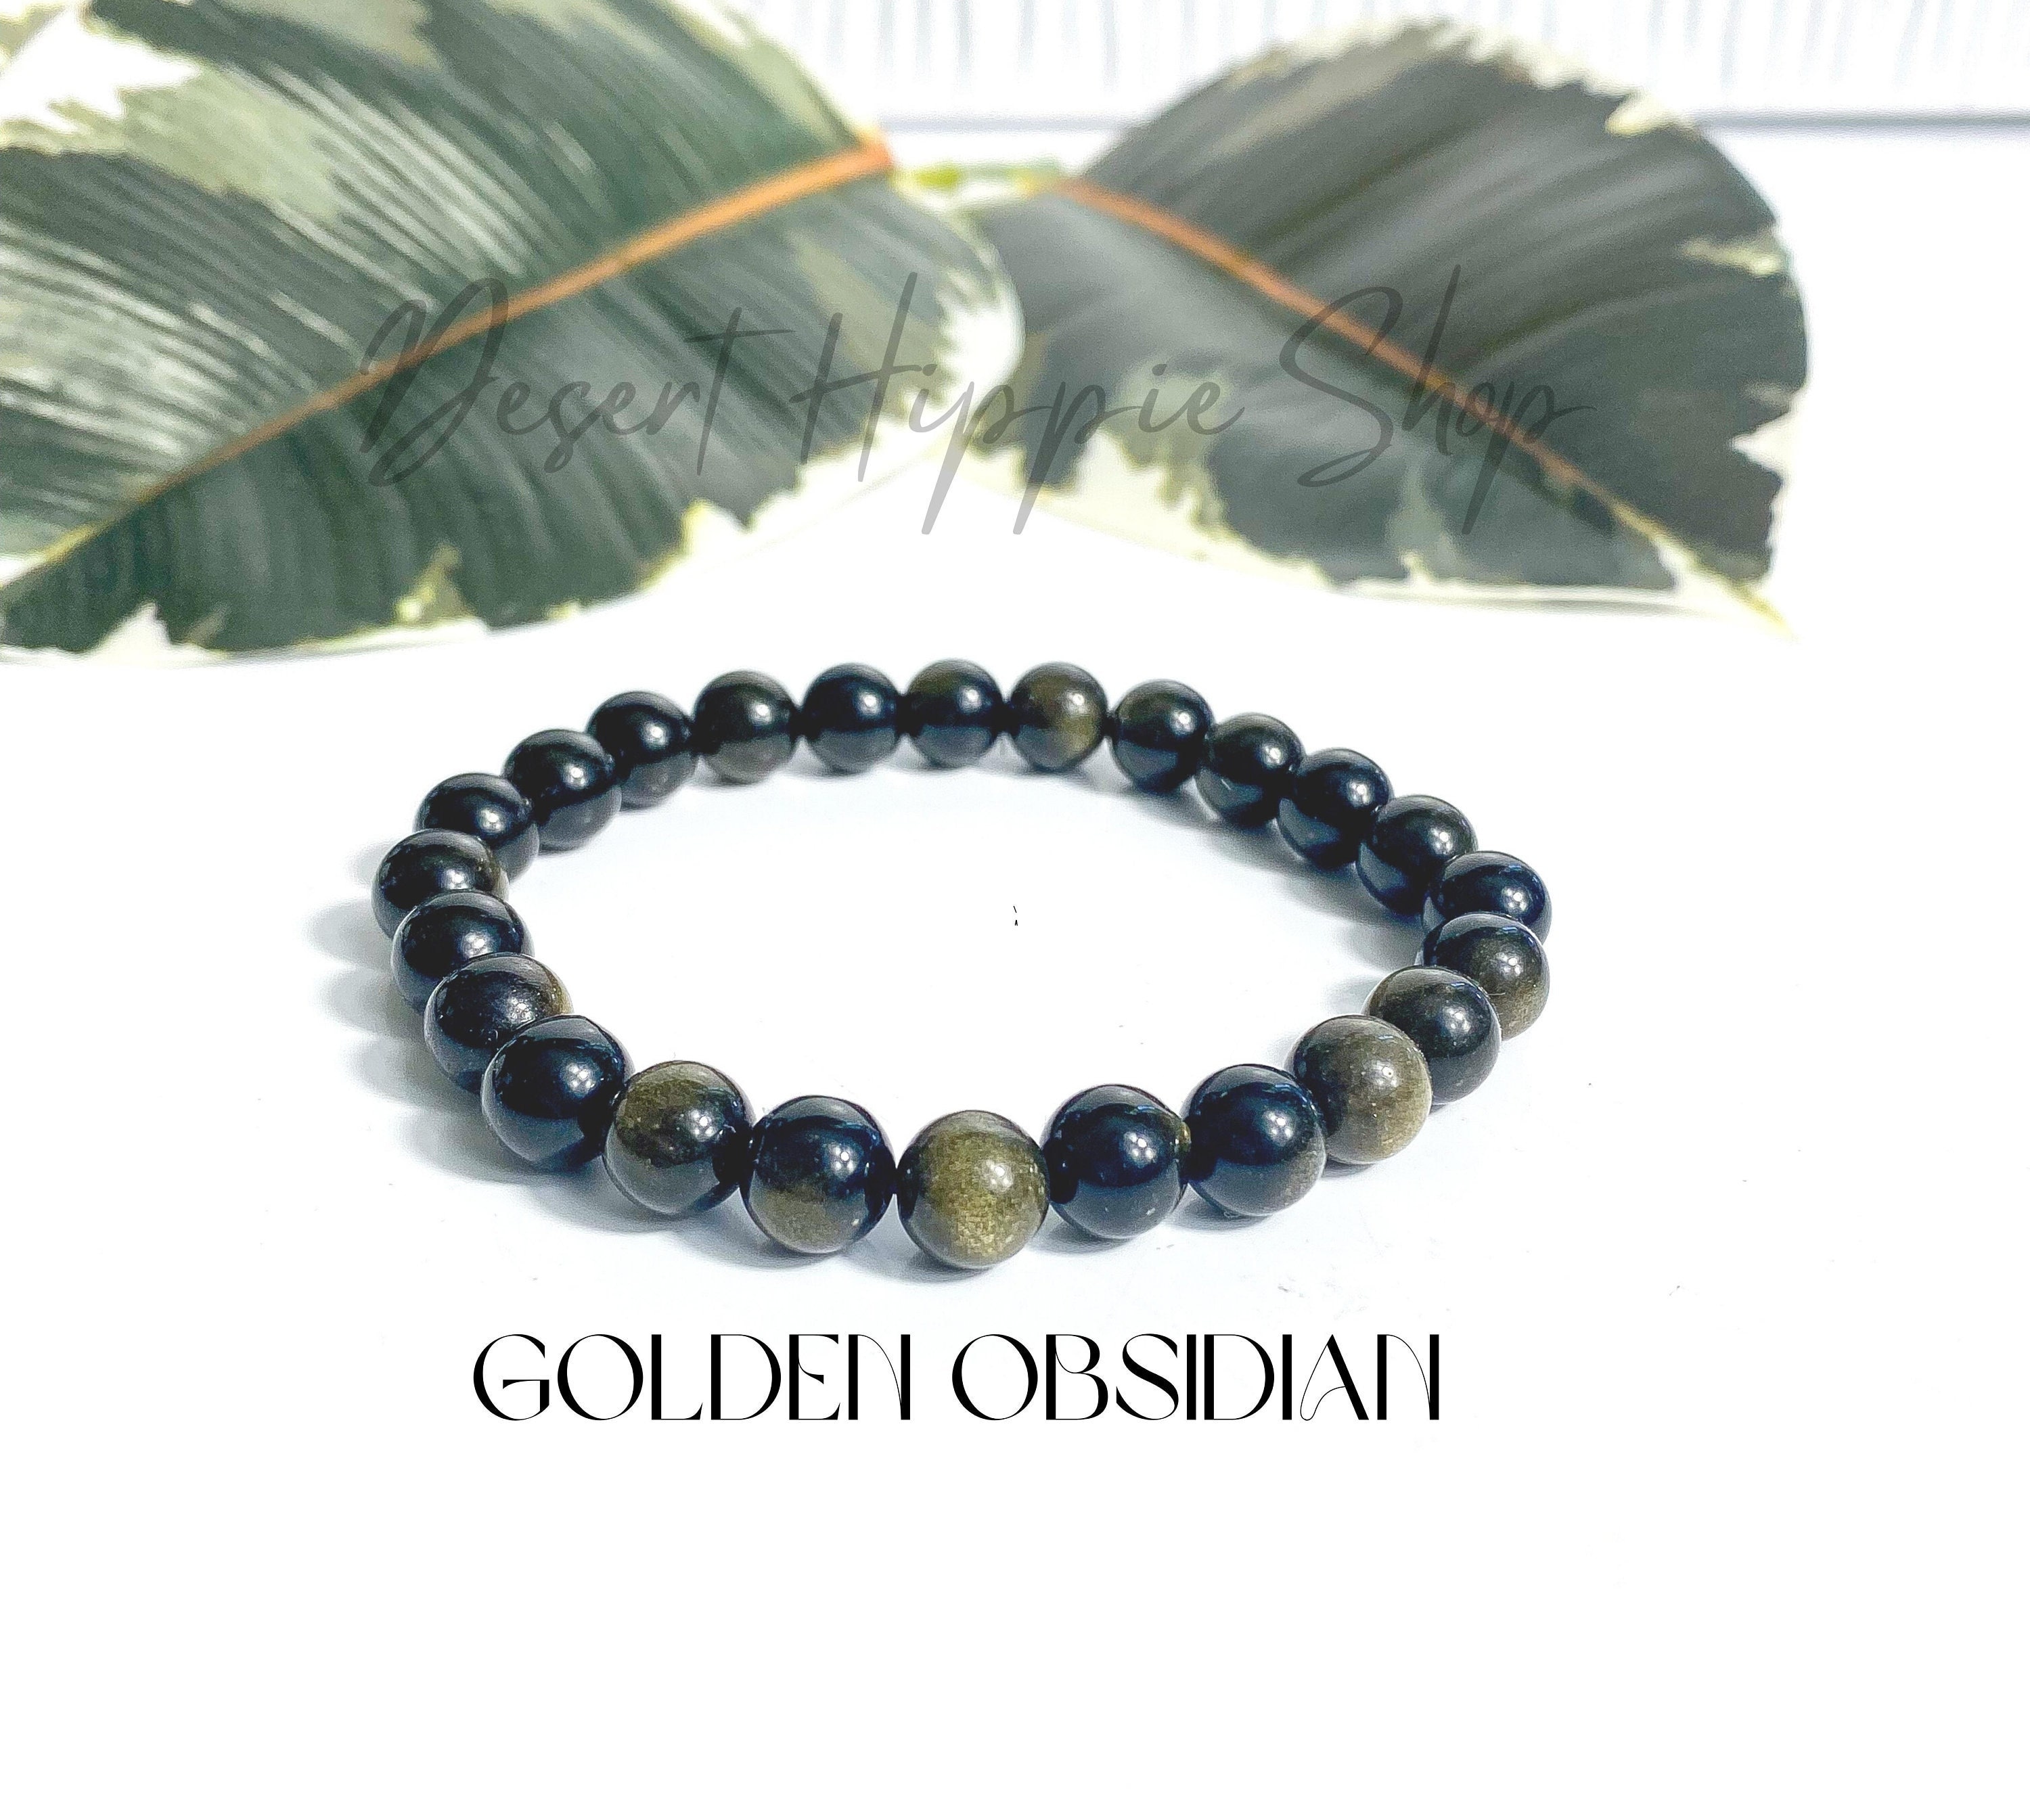 Buy Golden Obsidian Bracelet, Gold Sheen Obsidian Bracelet. Stretchy Beaded Obsidian  Bracelet, Gold Obsidian Bracelet Online in India - Etsy